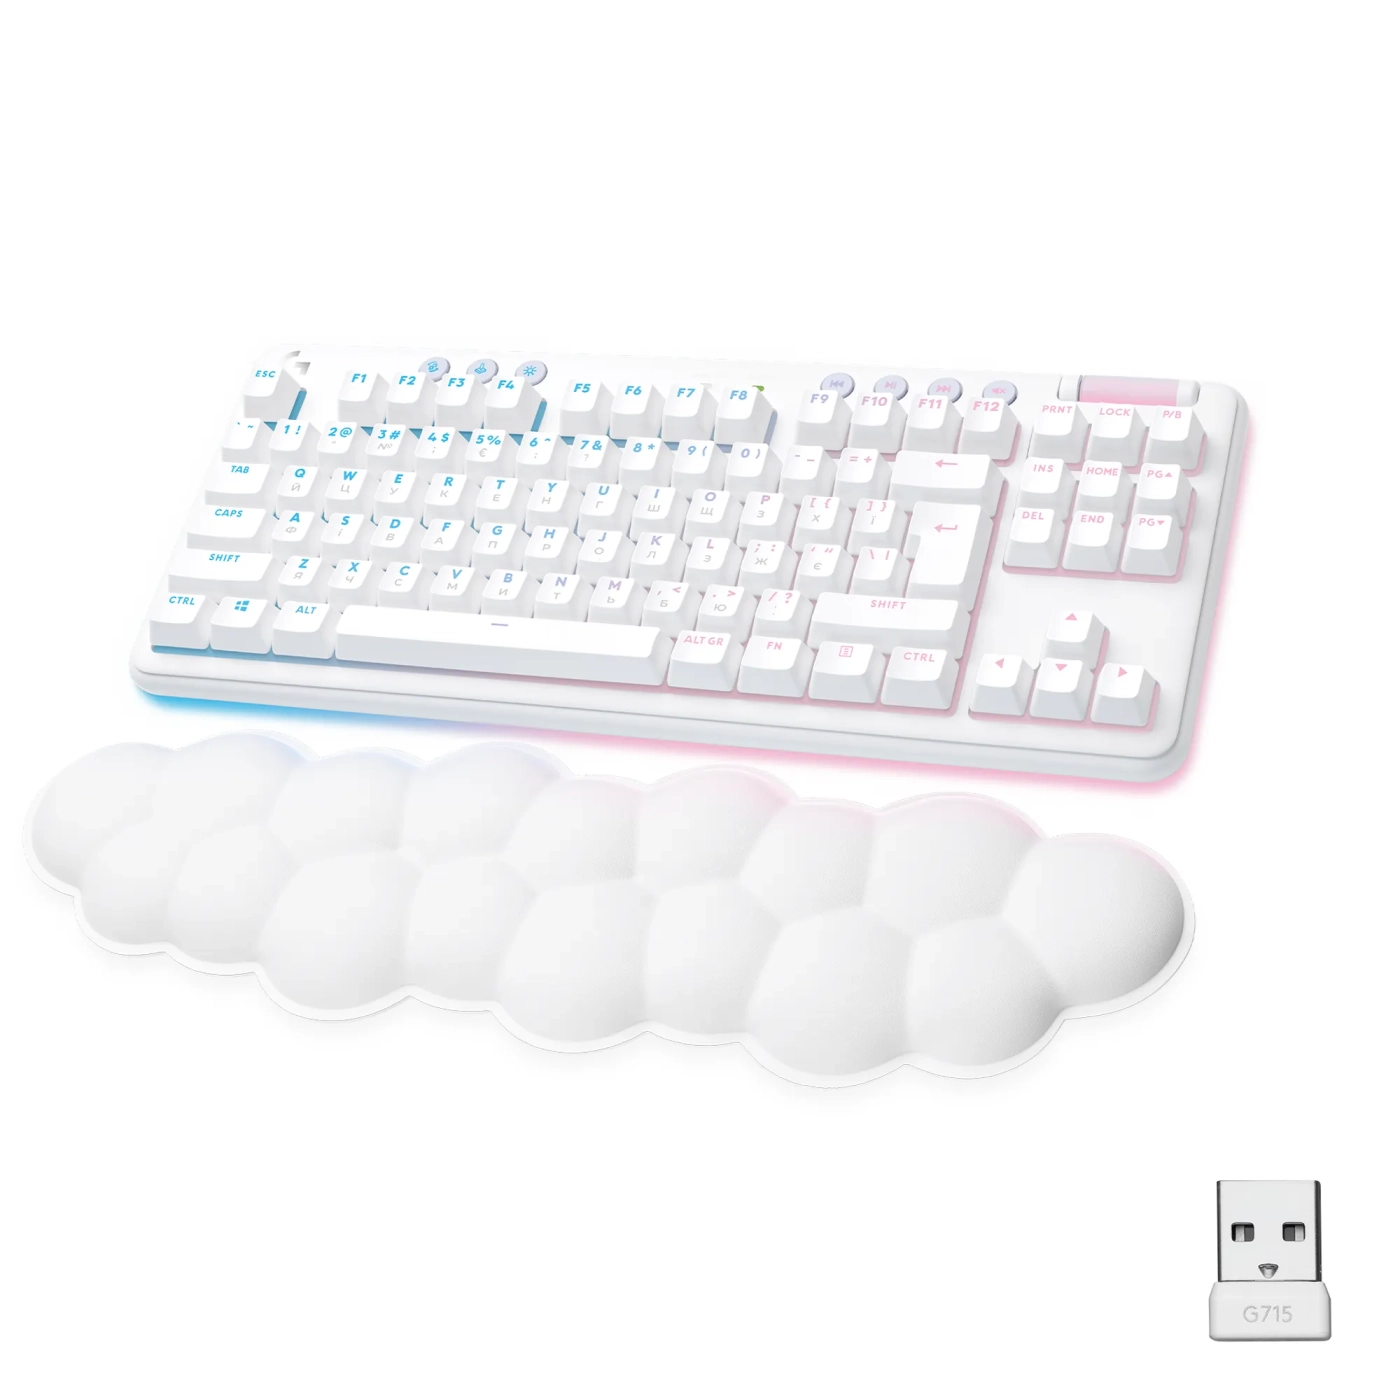 Купить Клавиатура Logitech G715 Gaming Keyboard Off White 2.4GHZ/BT Linear (920-010692) - фото 1